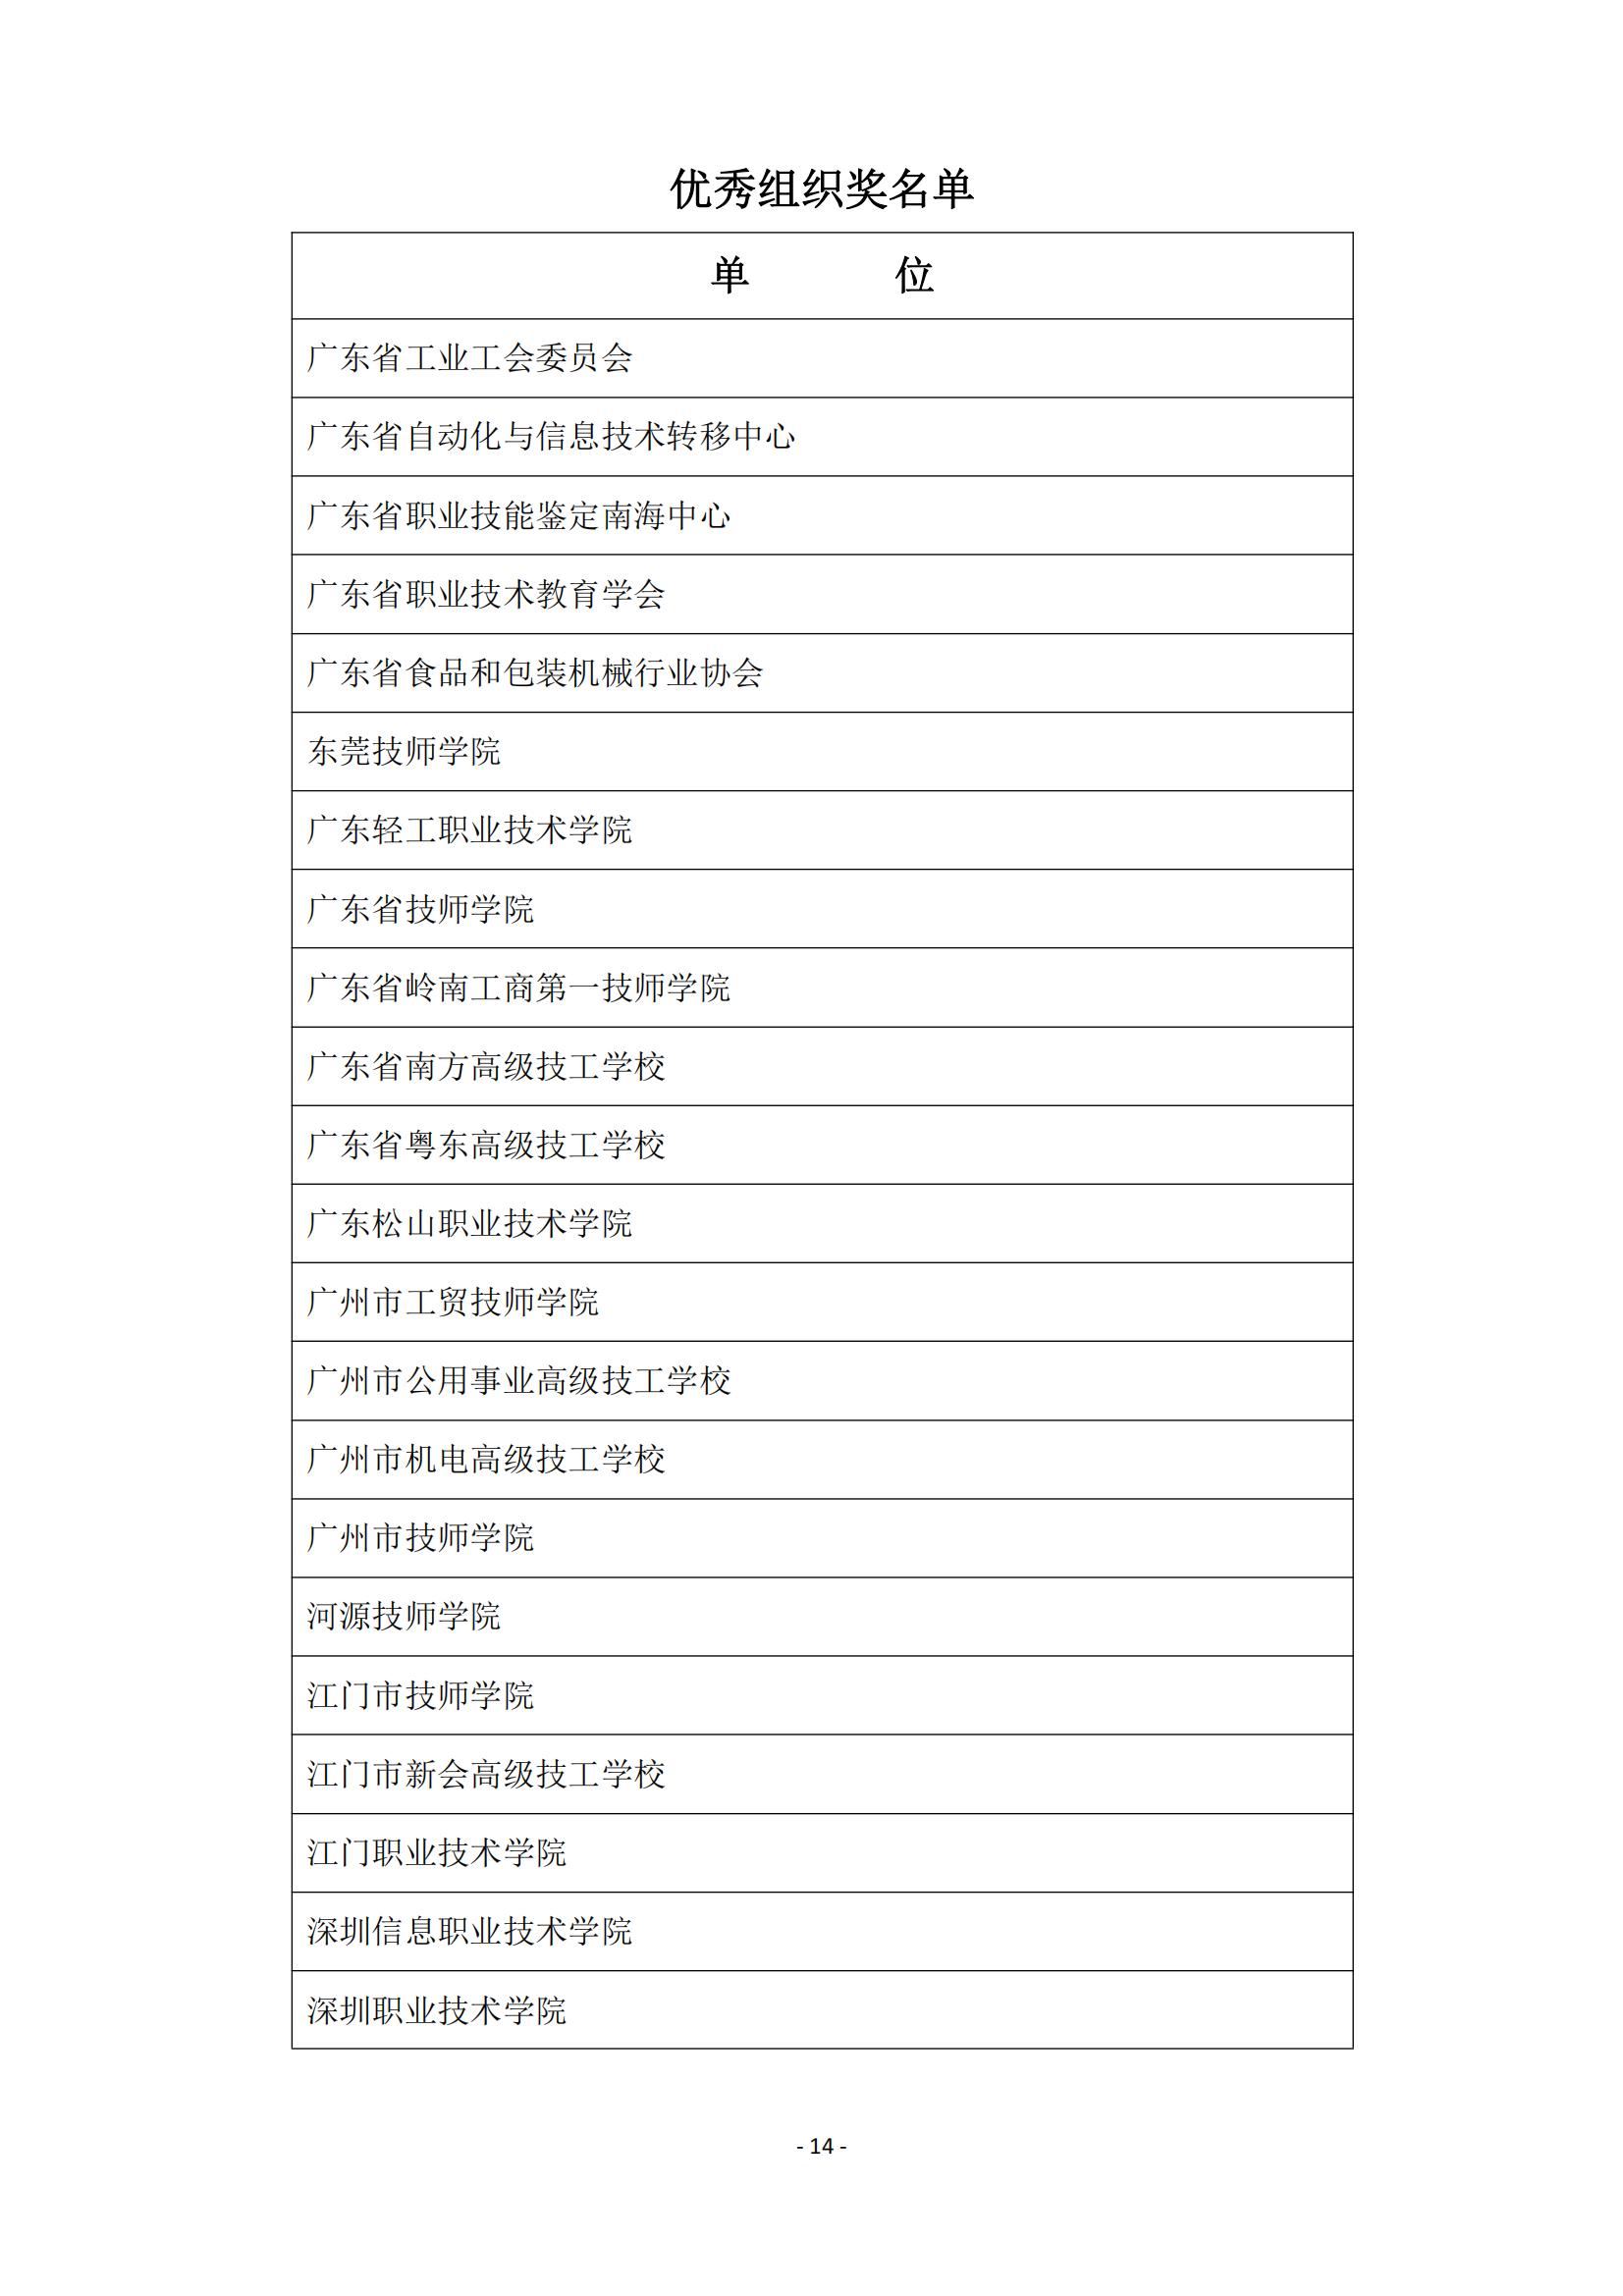 2015 年中国技能大赛--广东省机电一体化职业技能竞赛_13.jpg